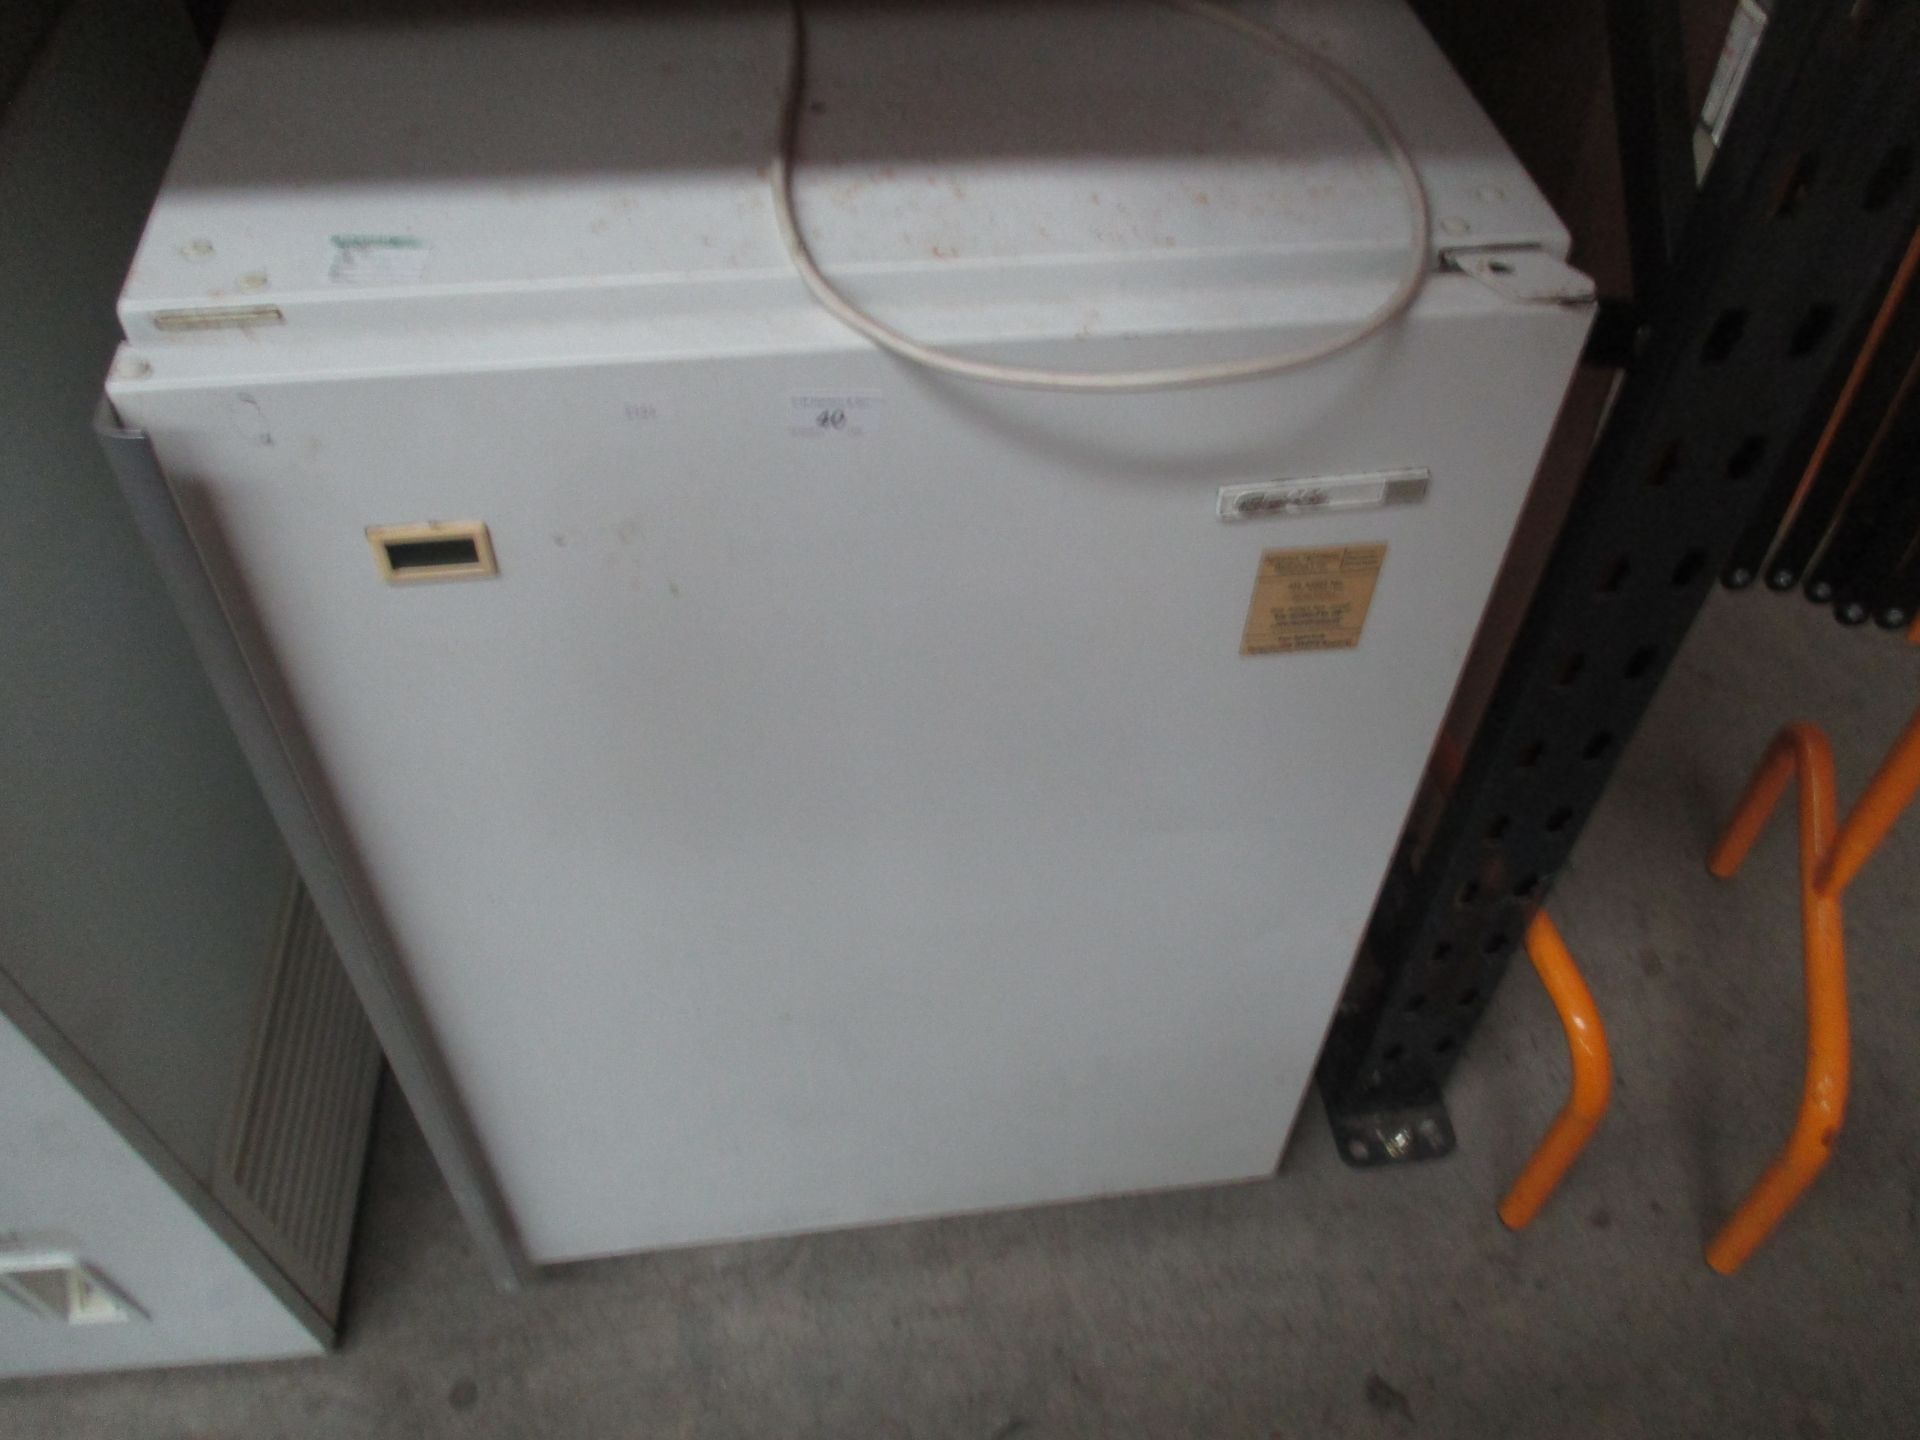 A Gram FS148C white under counter freezer